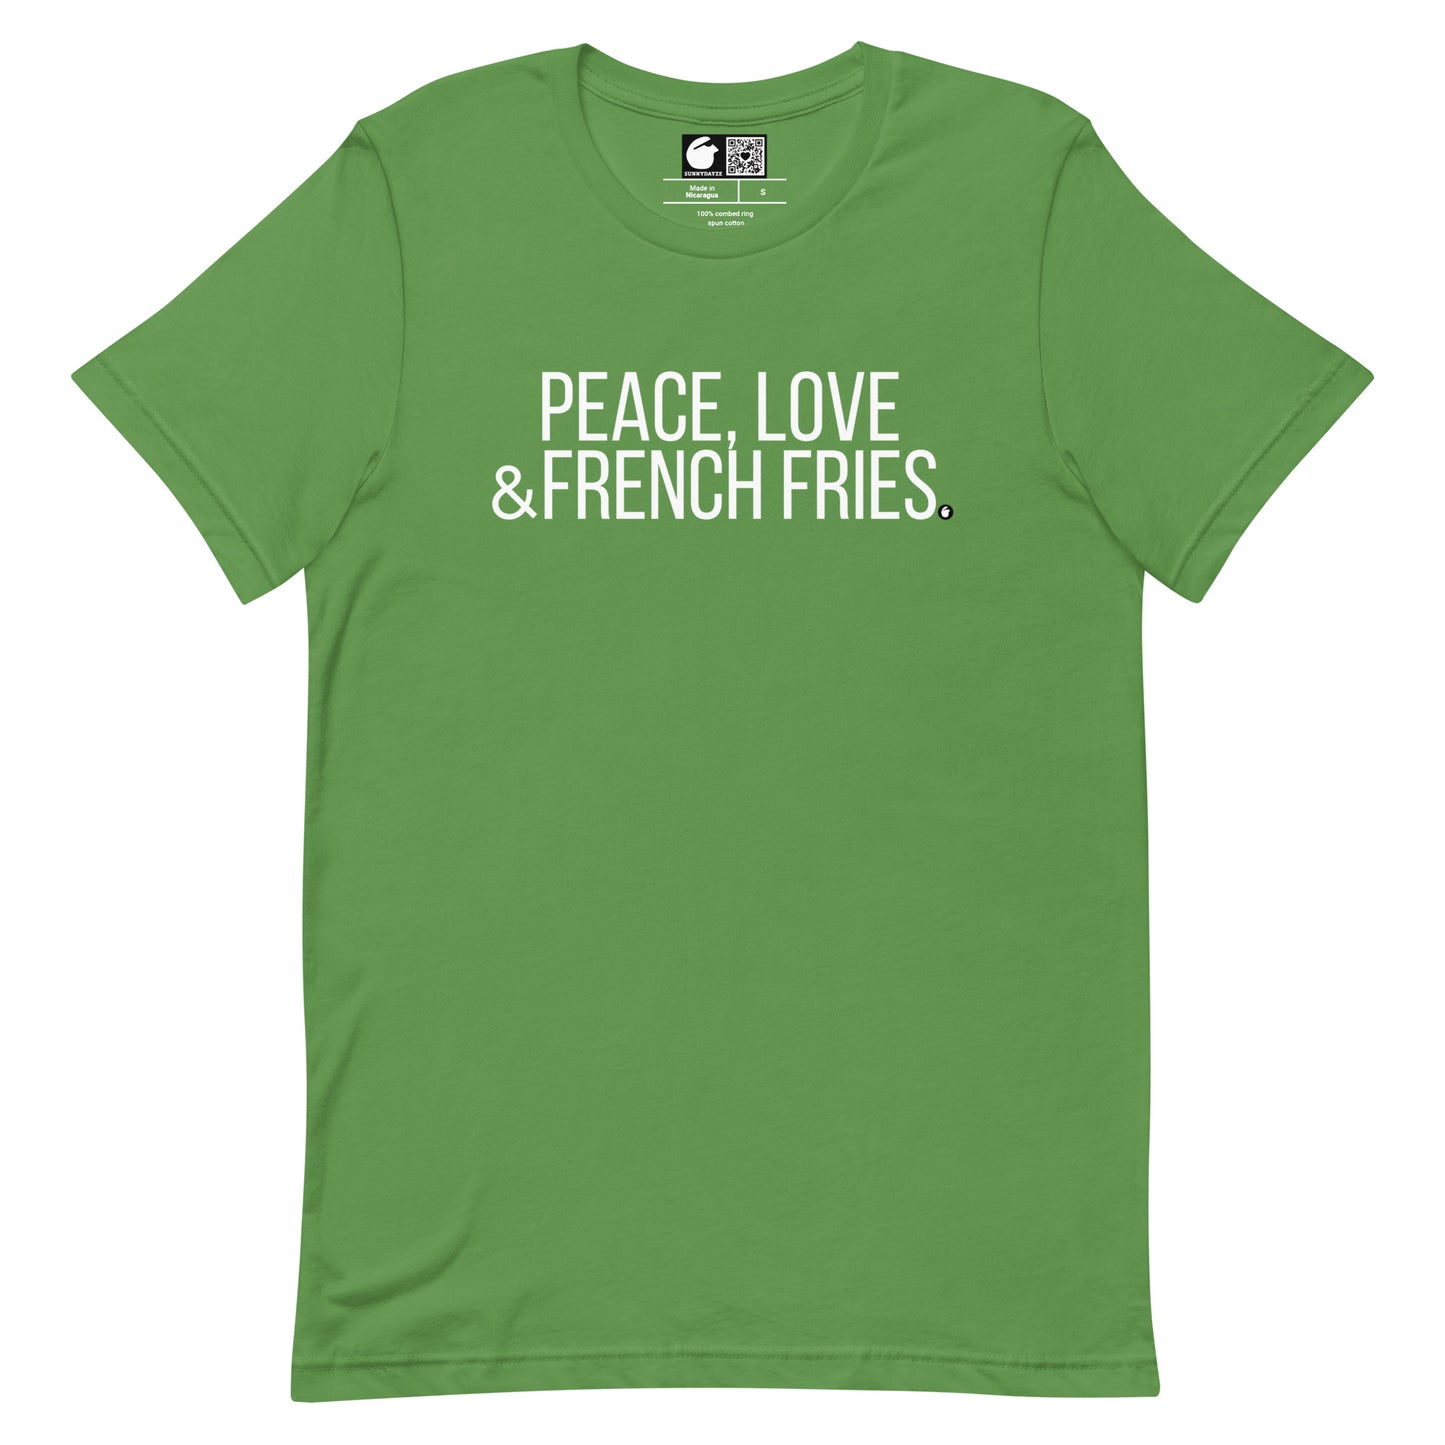 FRENCH FRIES Short-Sleeve Unisex t-shirt